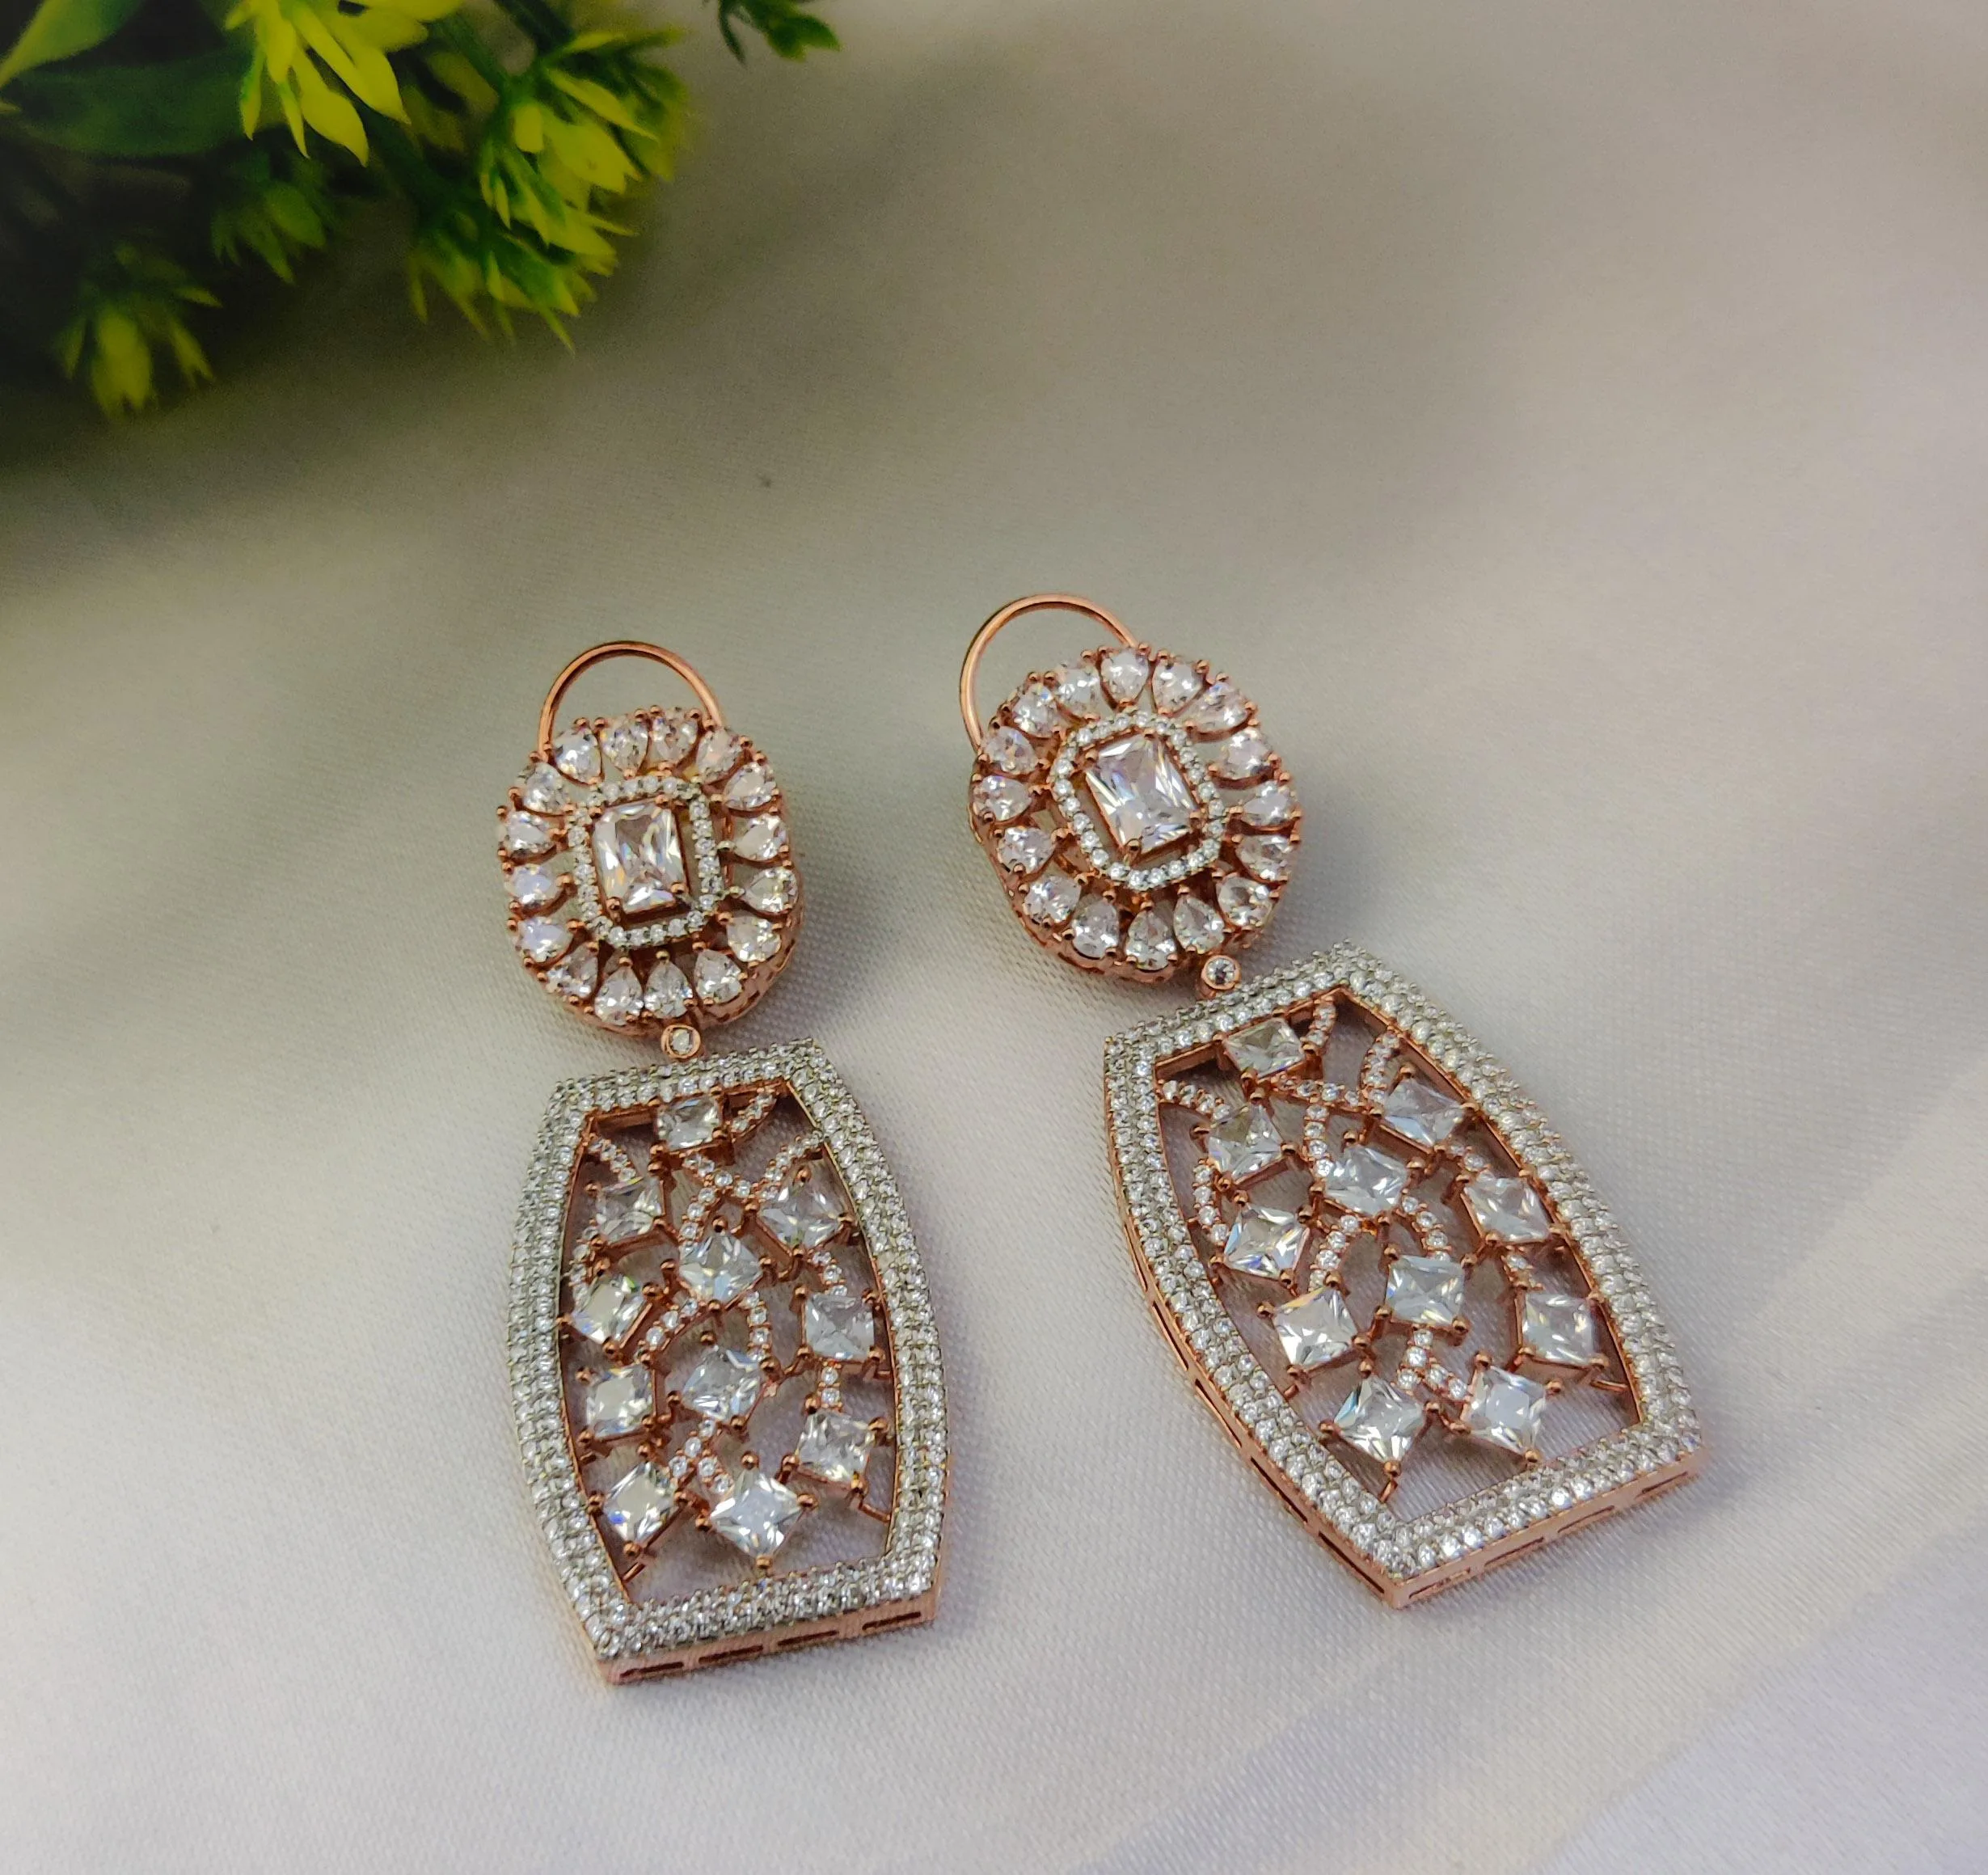 Buy Pear Shape American Diamond Earrings at Amazon.in